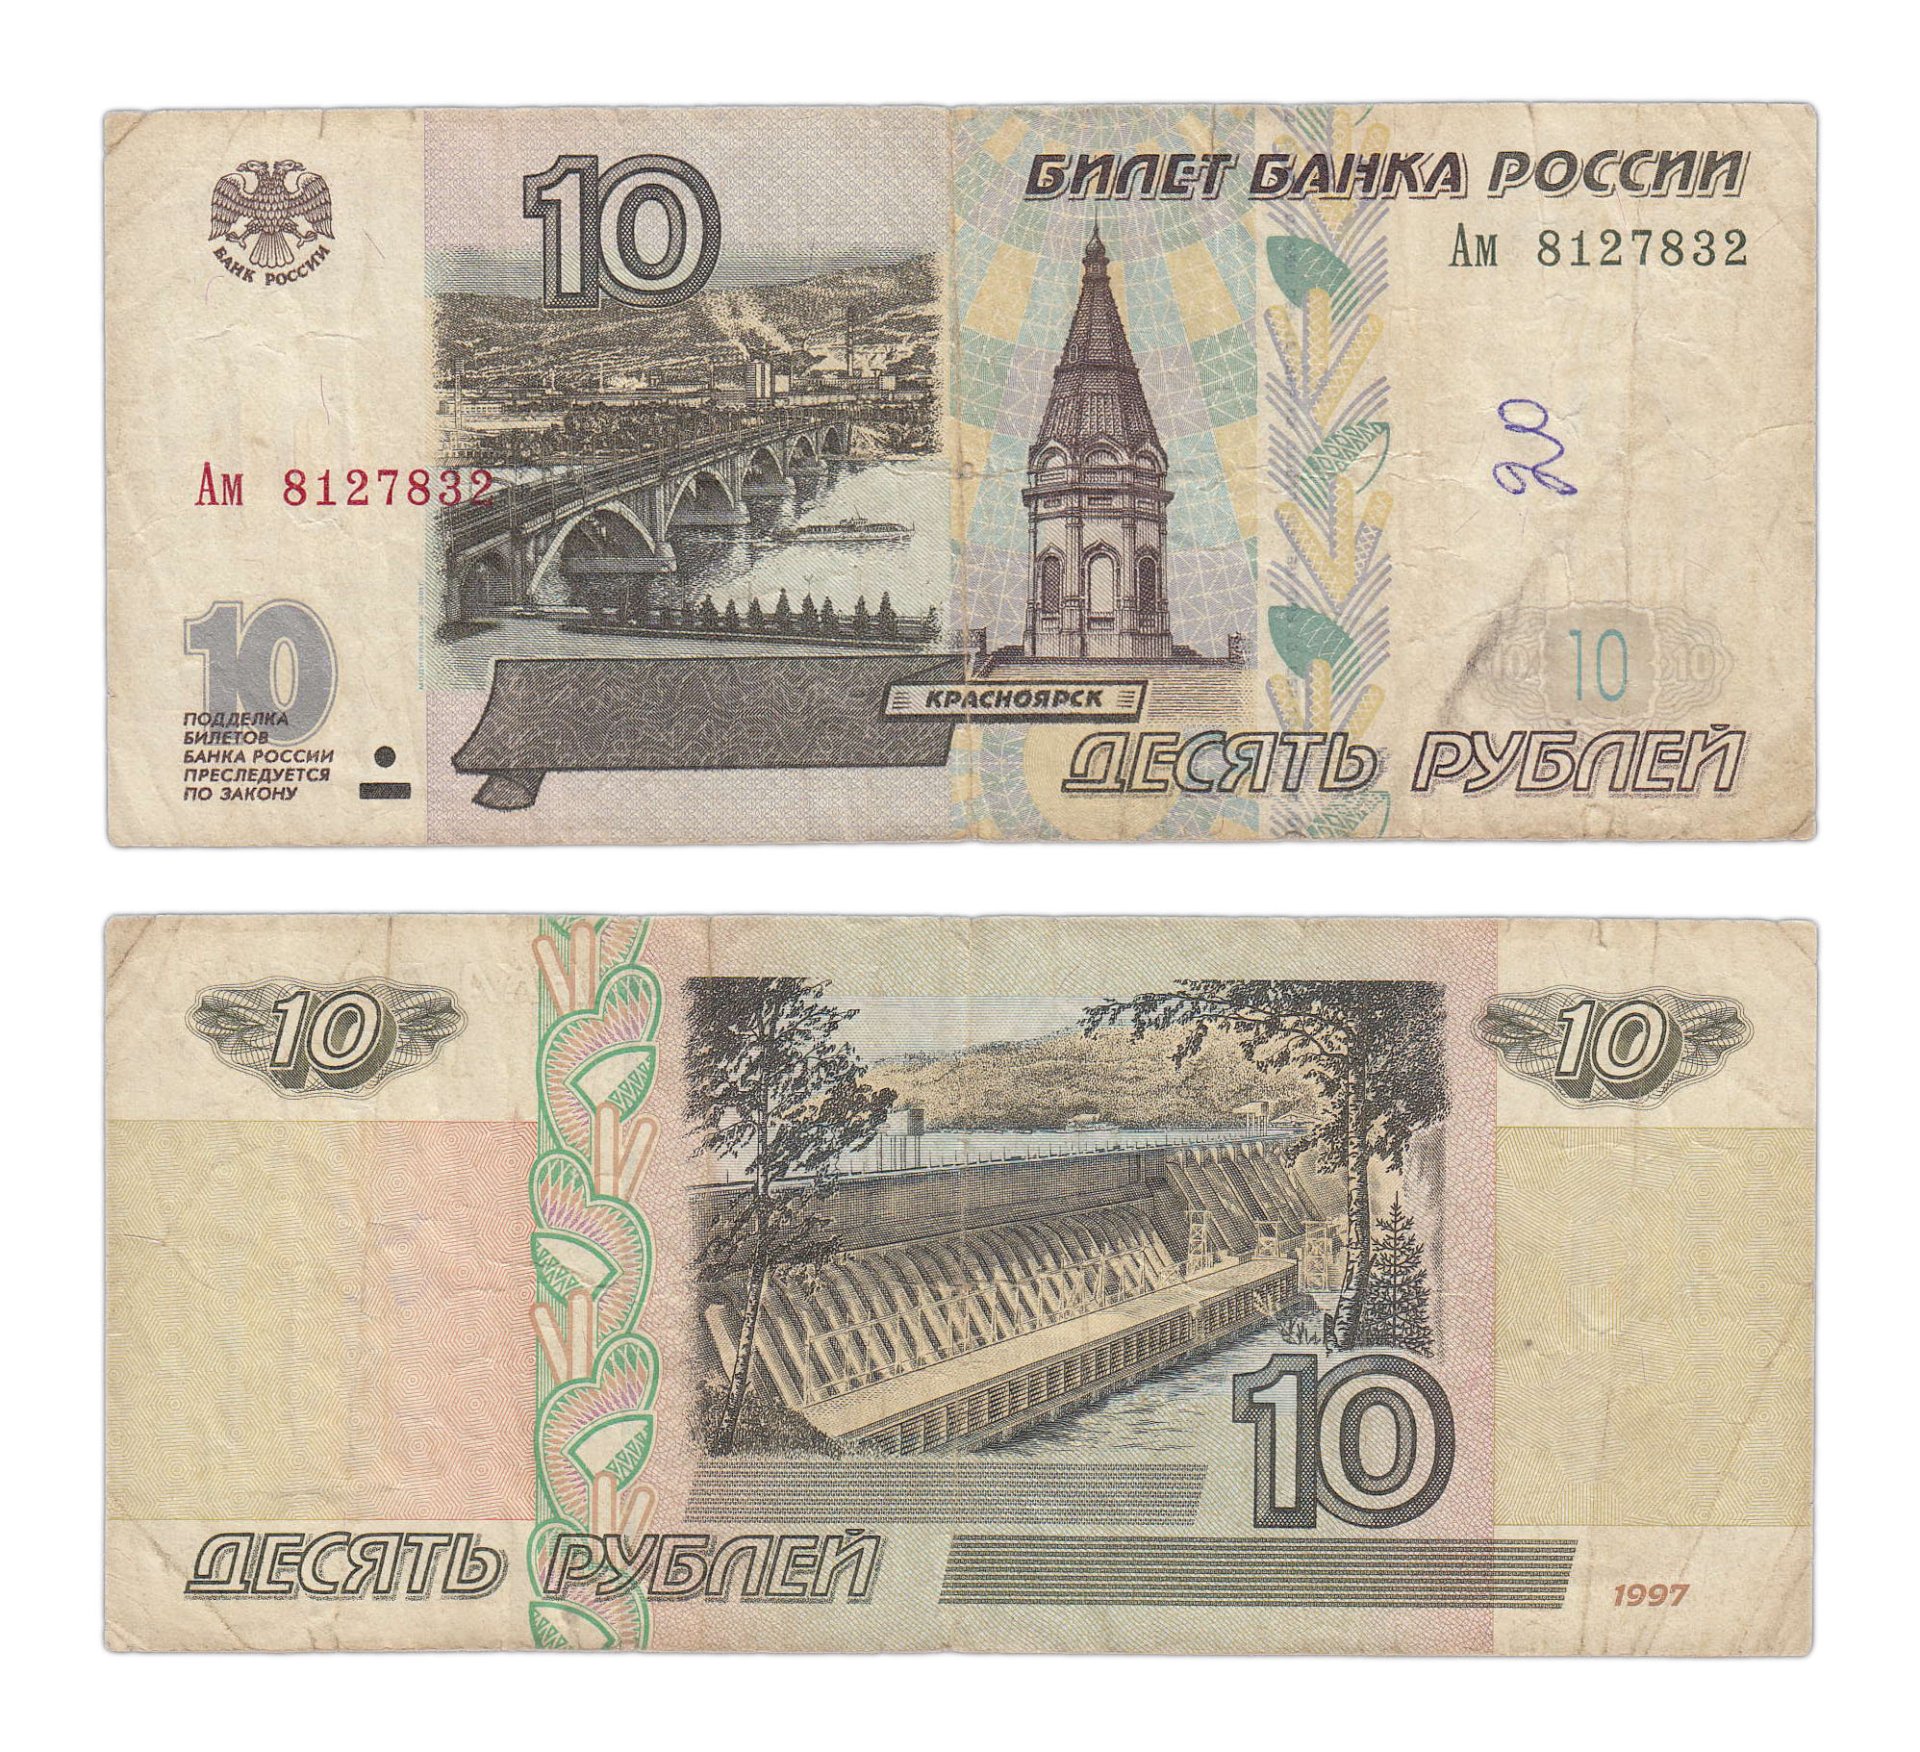 Цены 10 купюр. 10 Рублей банкнота. 10 Рублей бумажные. 10 Рублей 1997 года. Российские купюры 10 рублей.